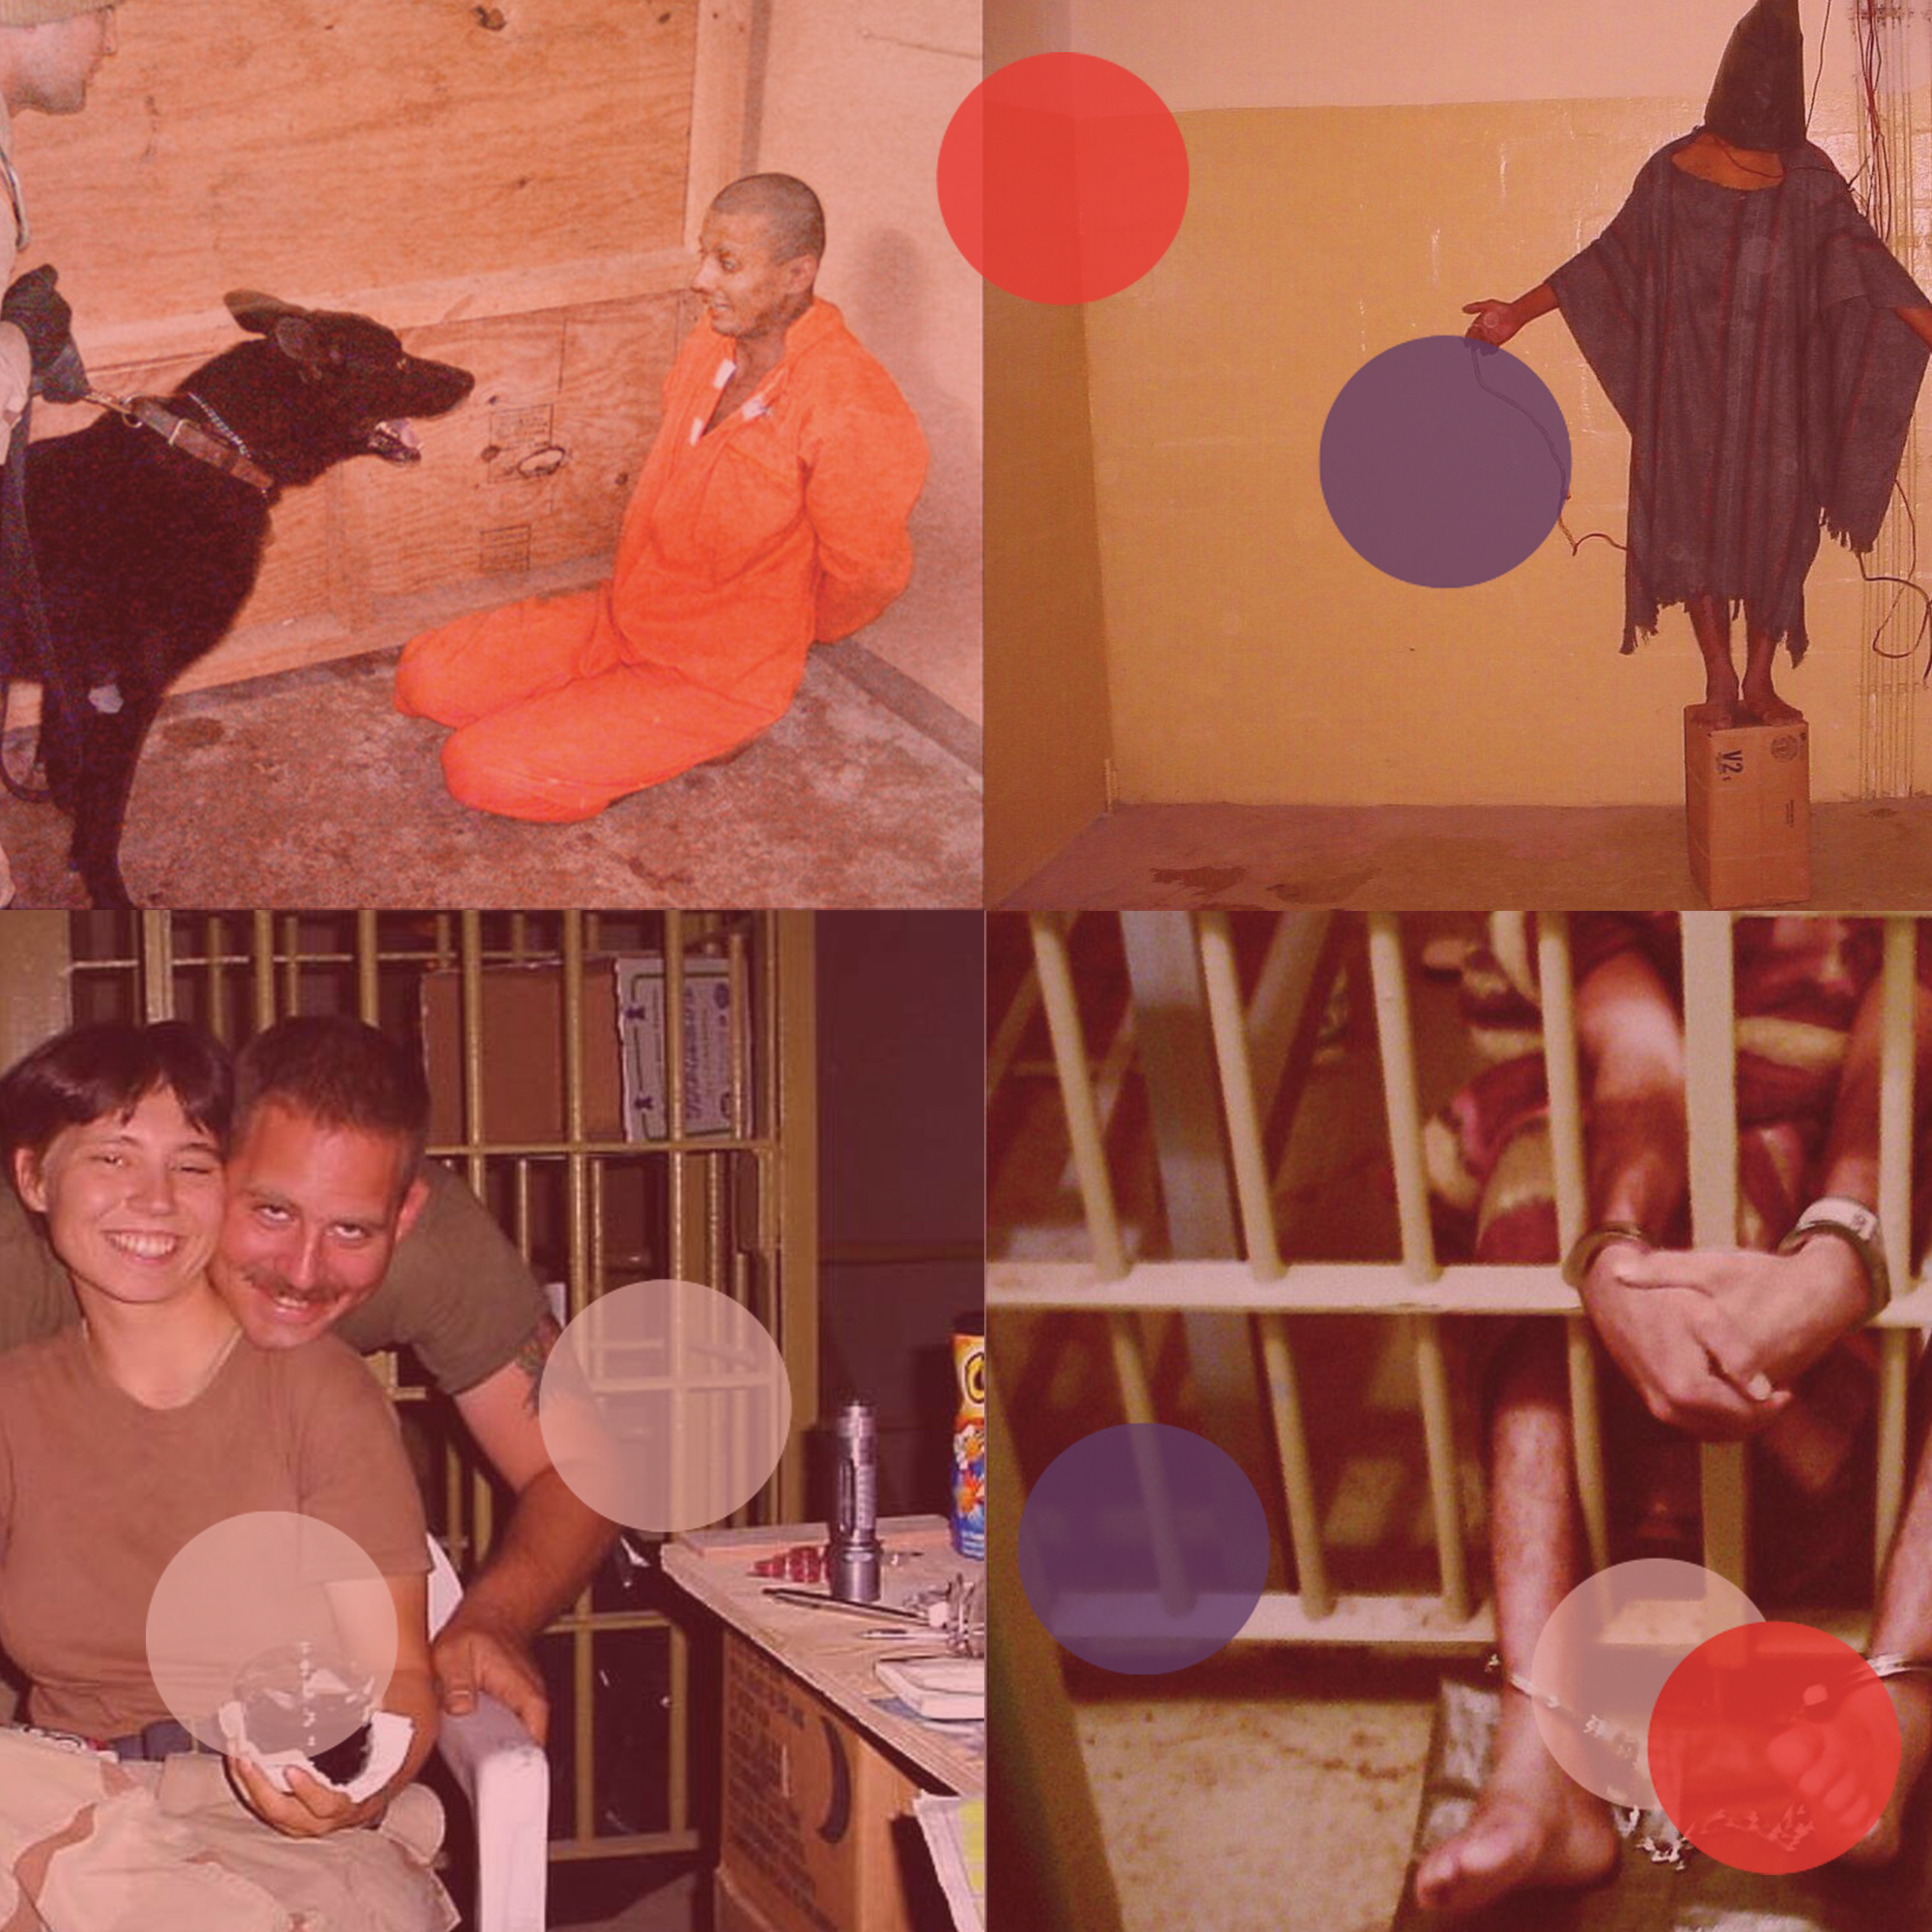 The Abu Ghraib Photos (2004)